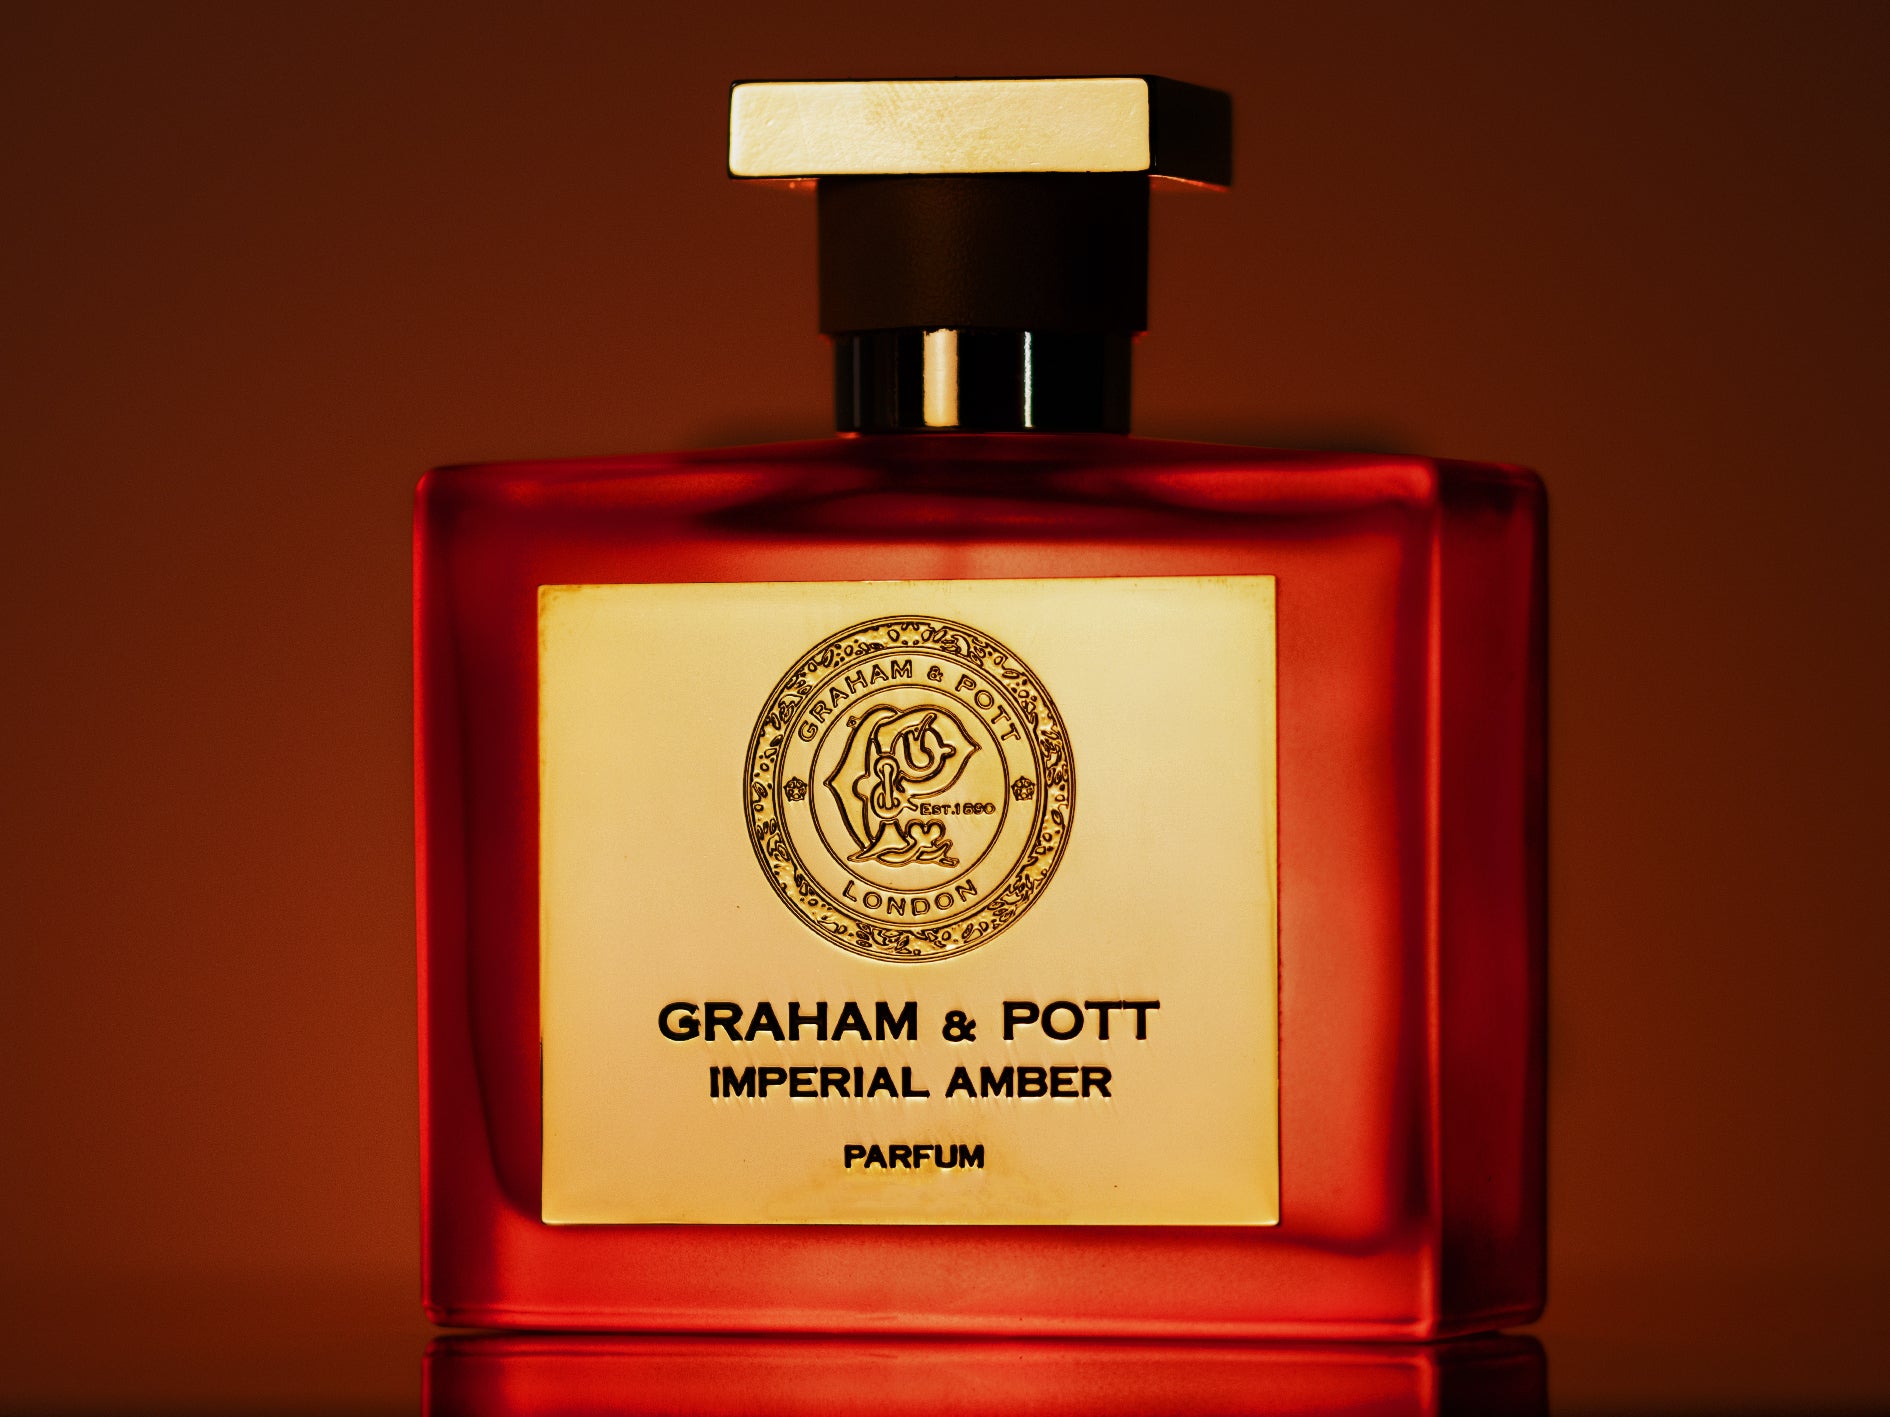 IMPERIAL AMBER Parfum - GRAHAM & POTT